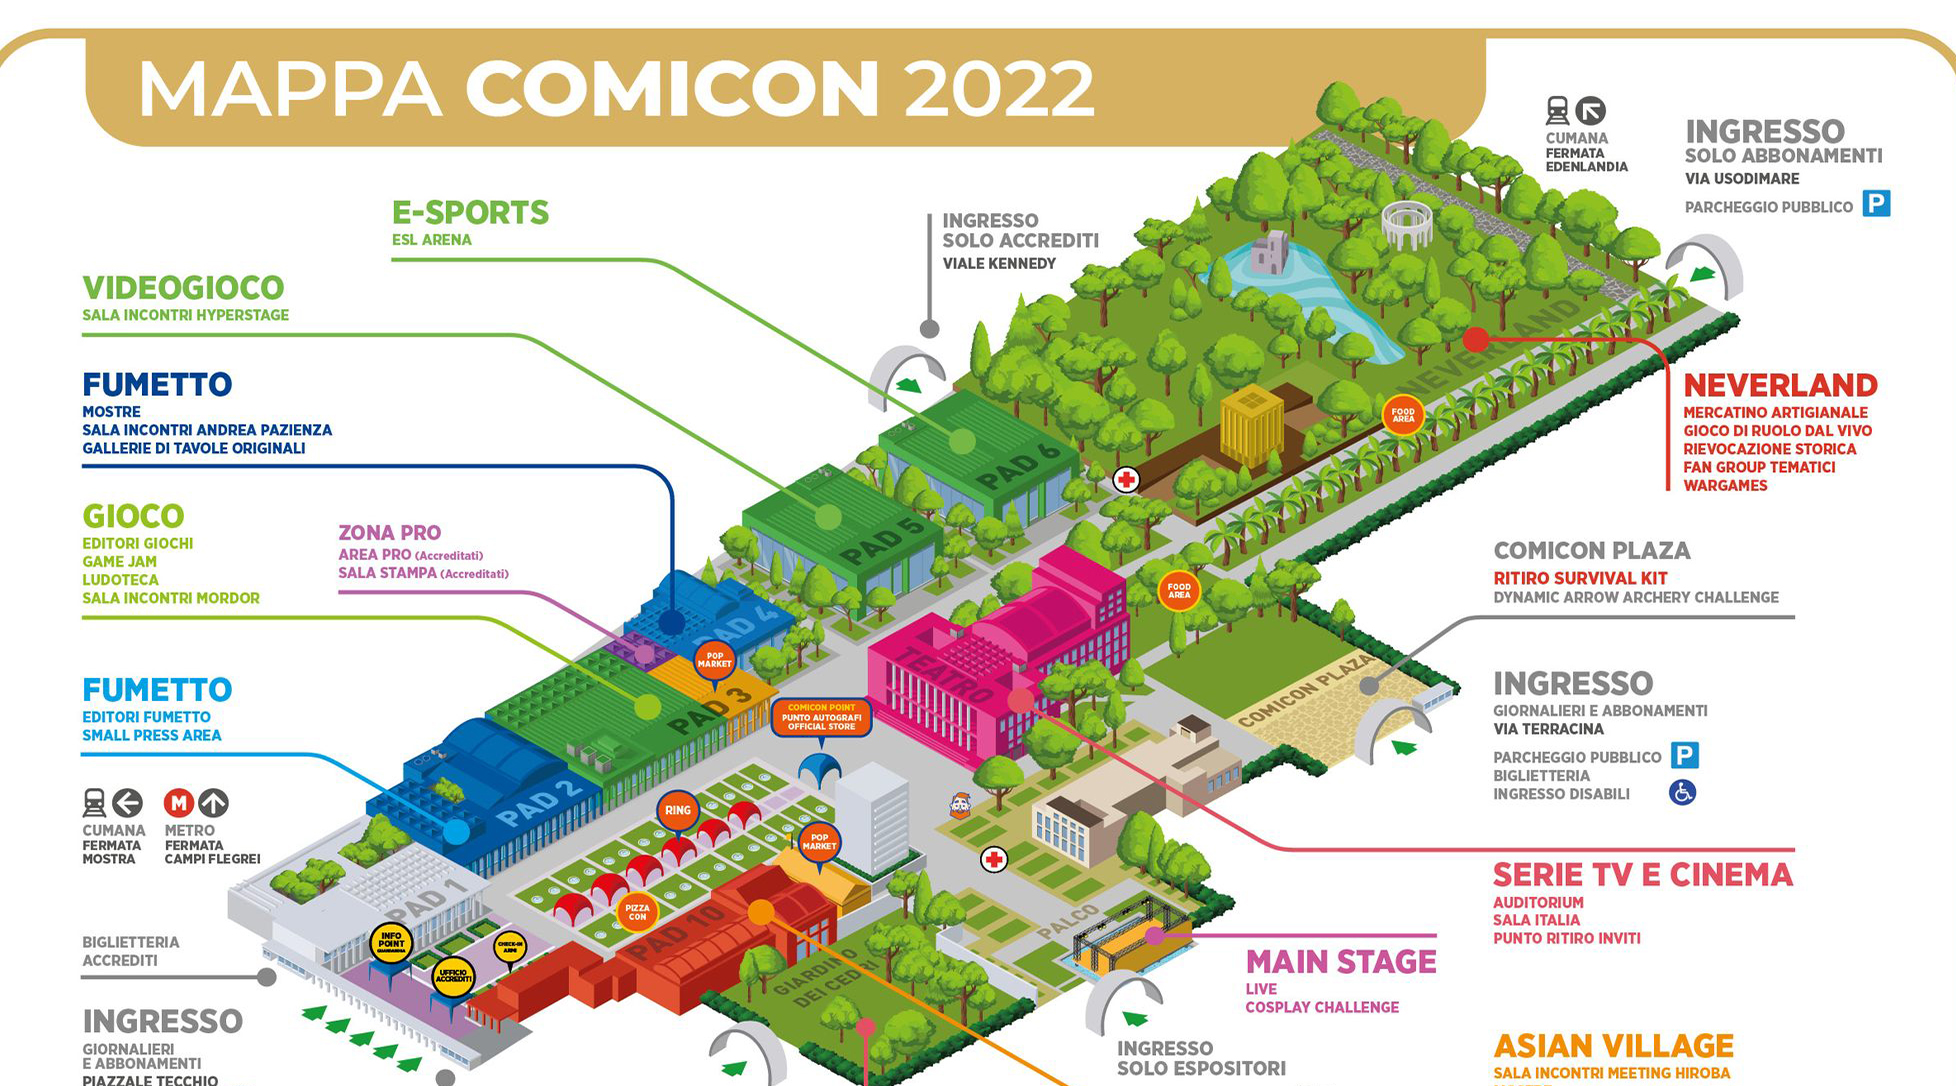 Comicon 2022 地图，缩小版